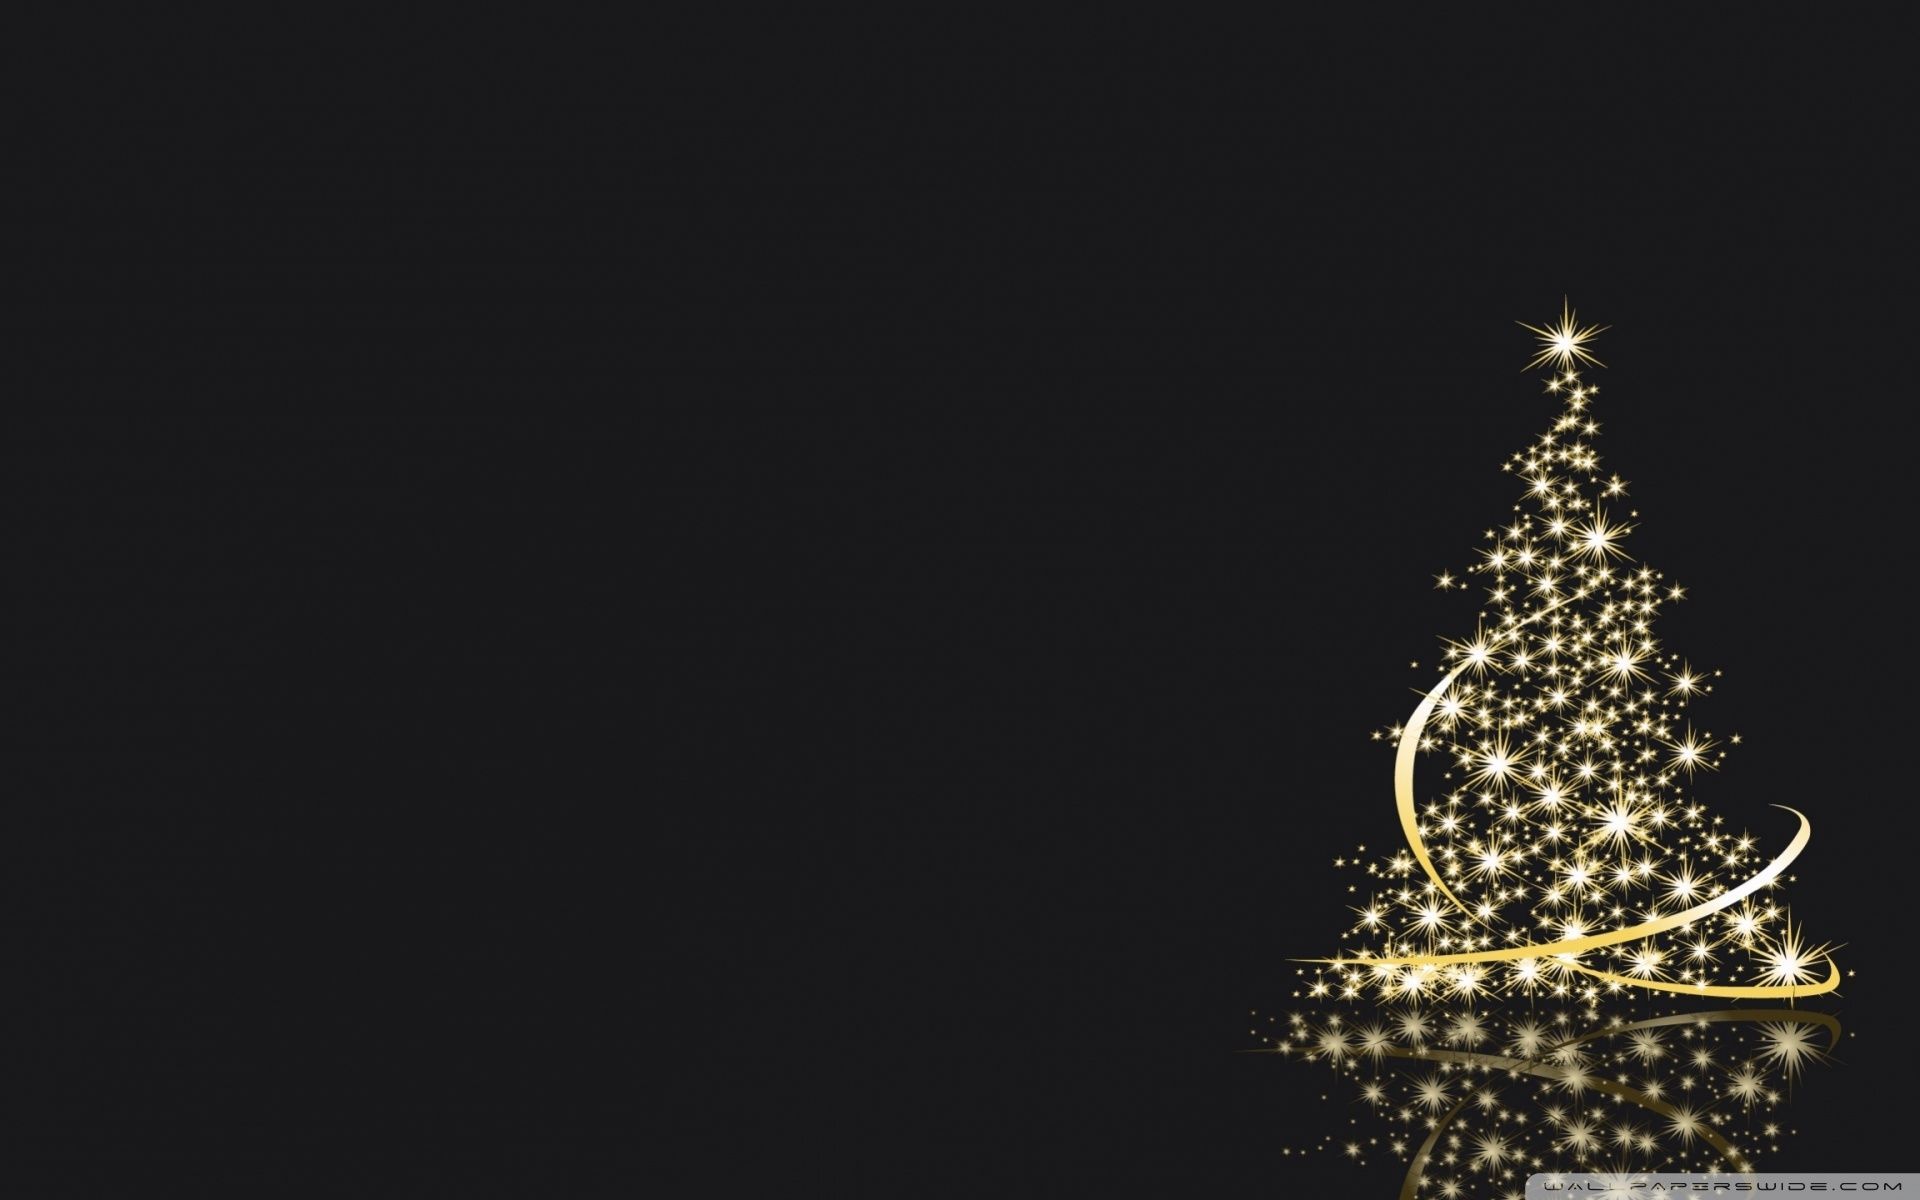 Los 10 mejores fondos de pantalla de Navidad gratis para Ubuntu Desktop |  Navidad. Wallpaper navideños. de Navidad, Navideños - Todo fondos